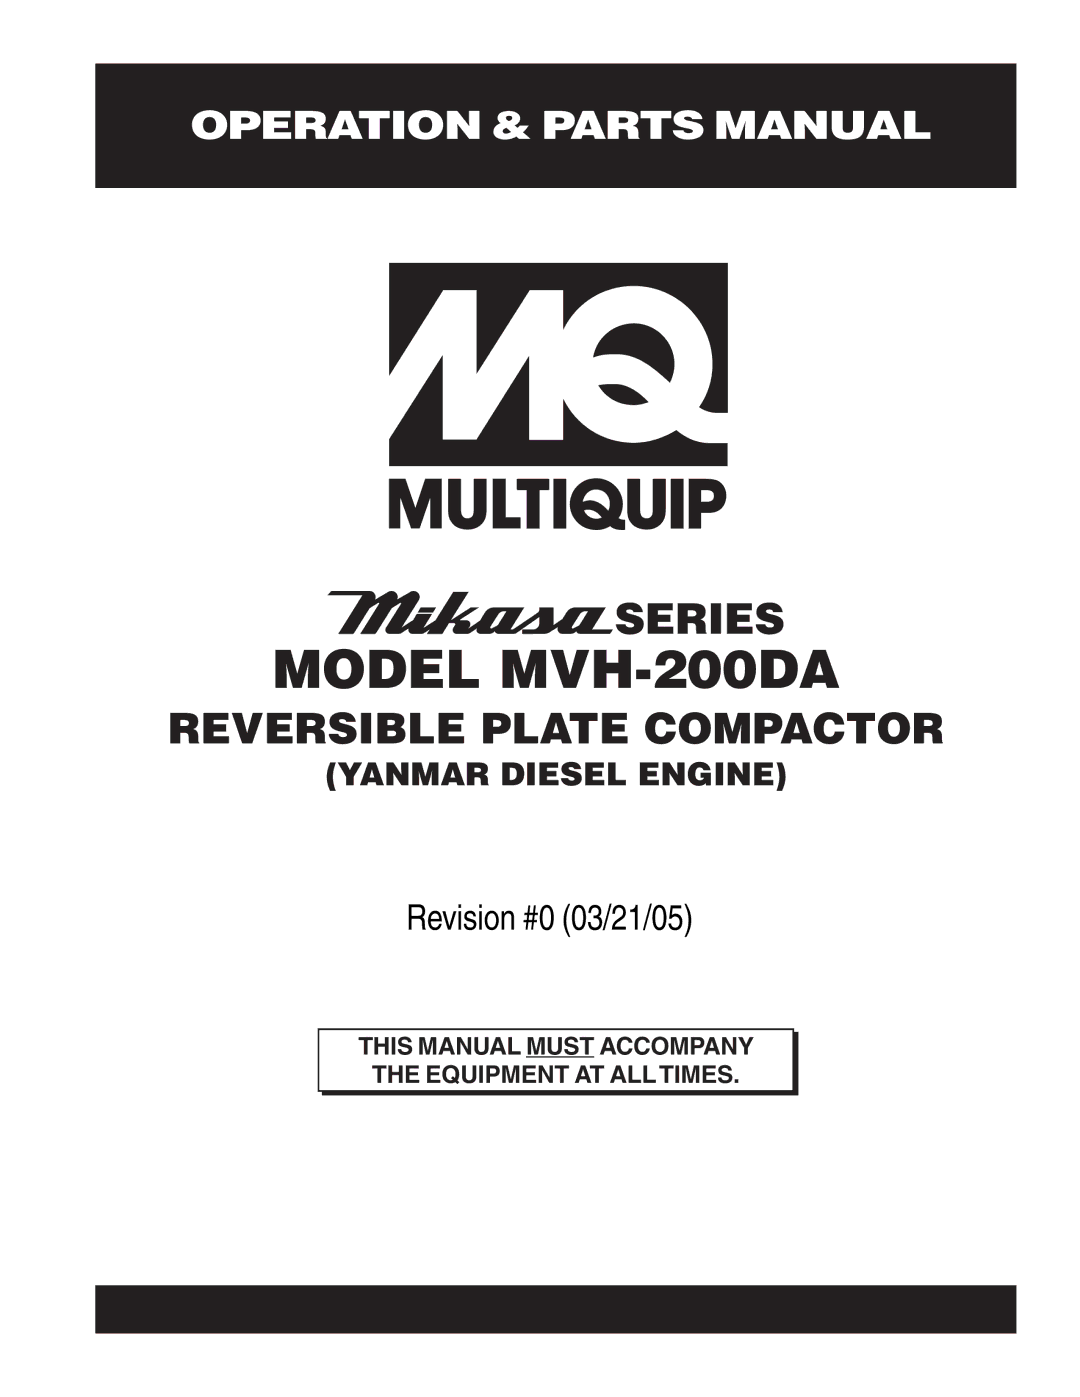 Multiquip manual Model MVH-200DA 